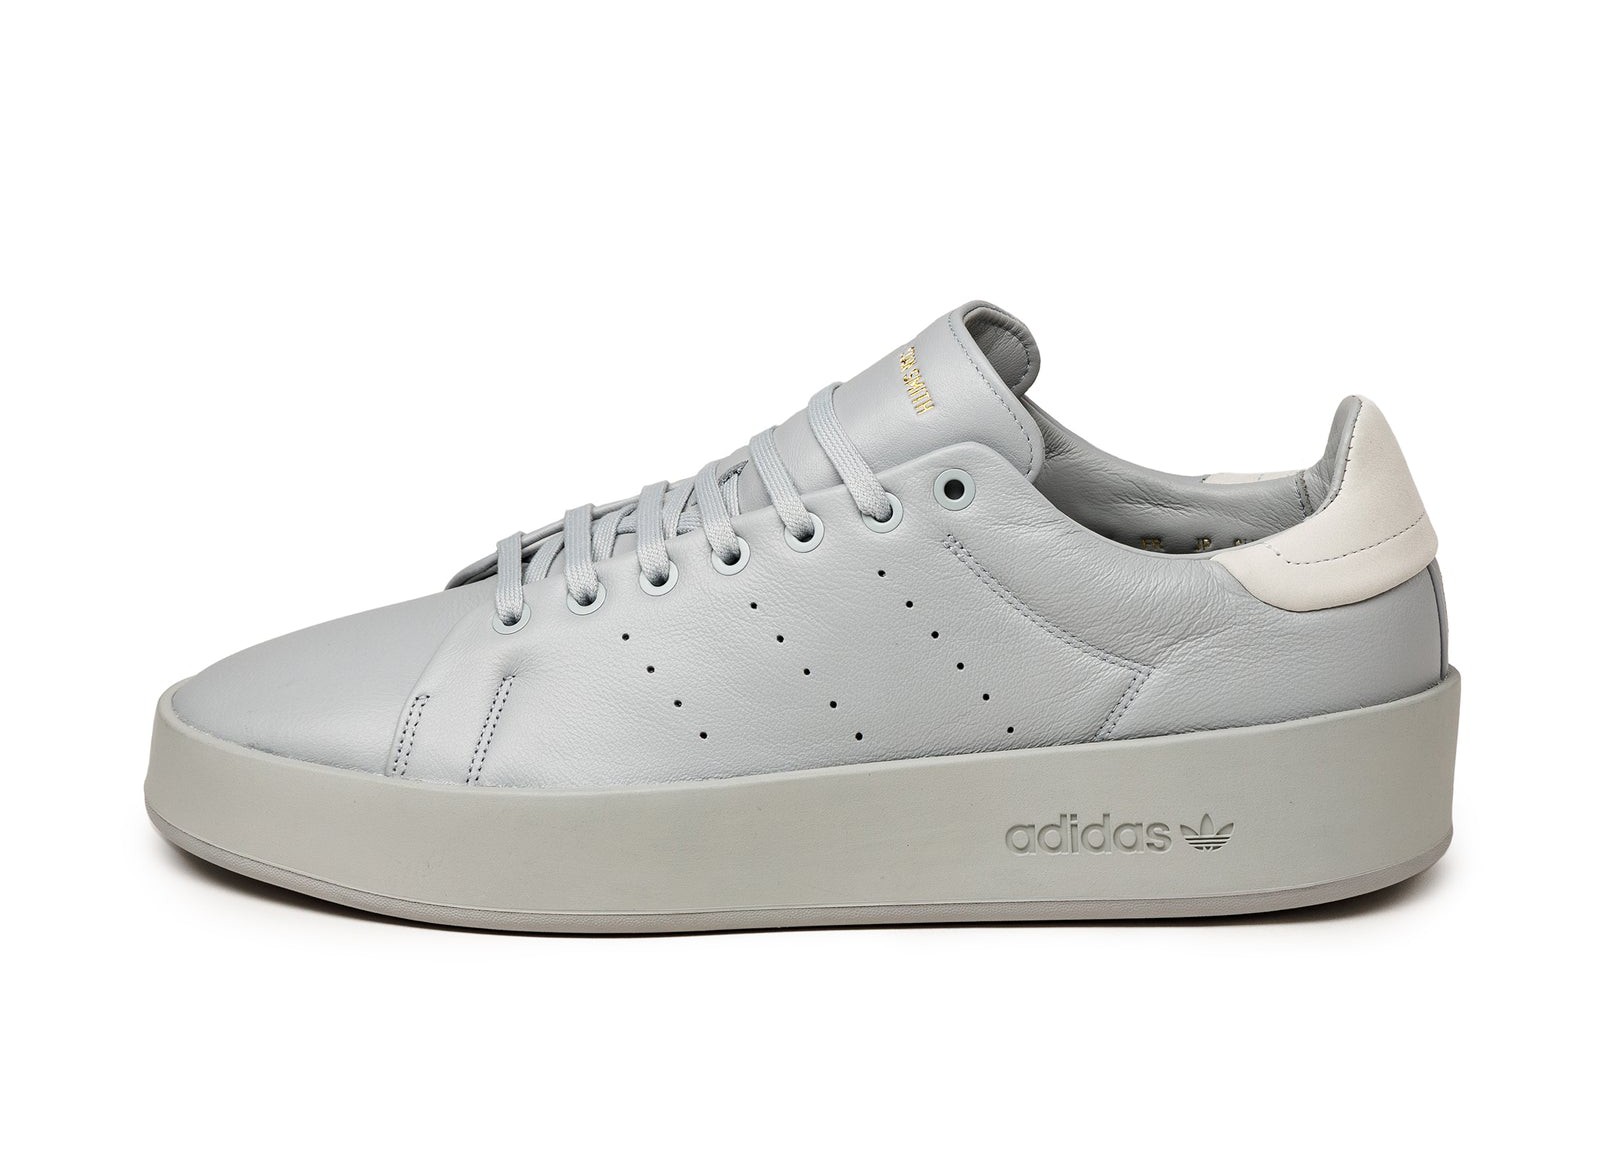 Adidas Stan Smith Recon
Pantone / Crystal White